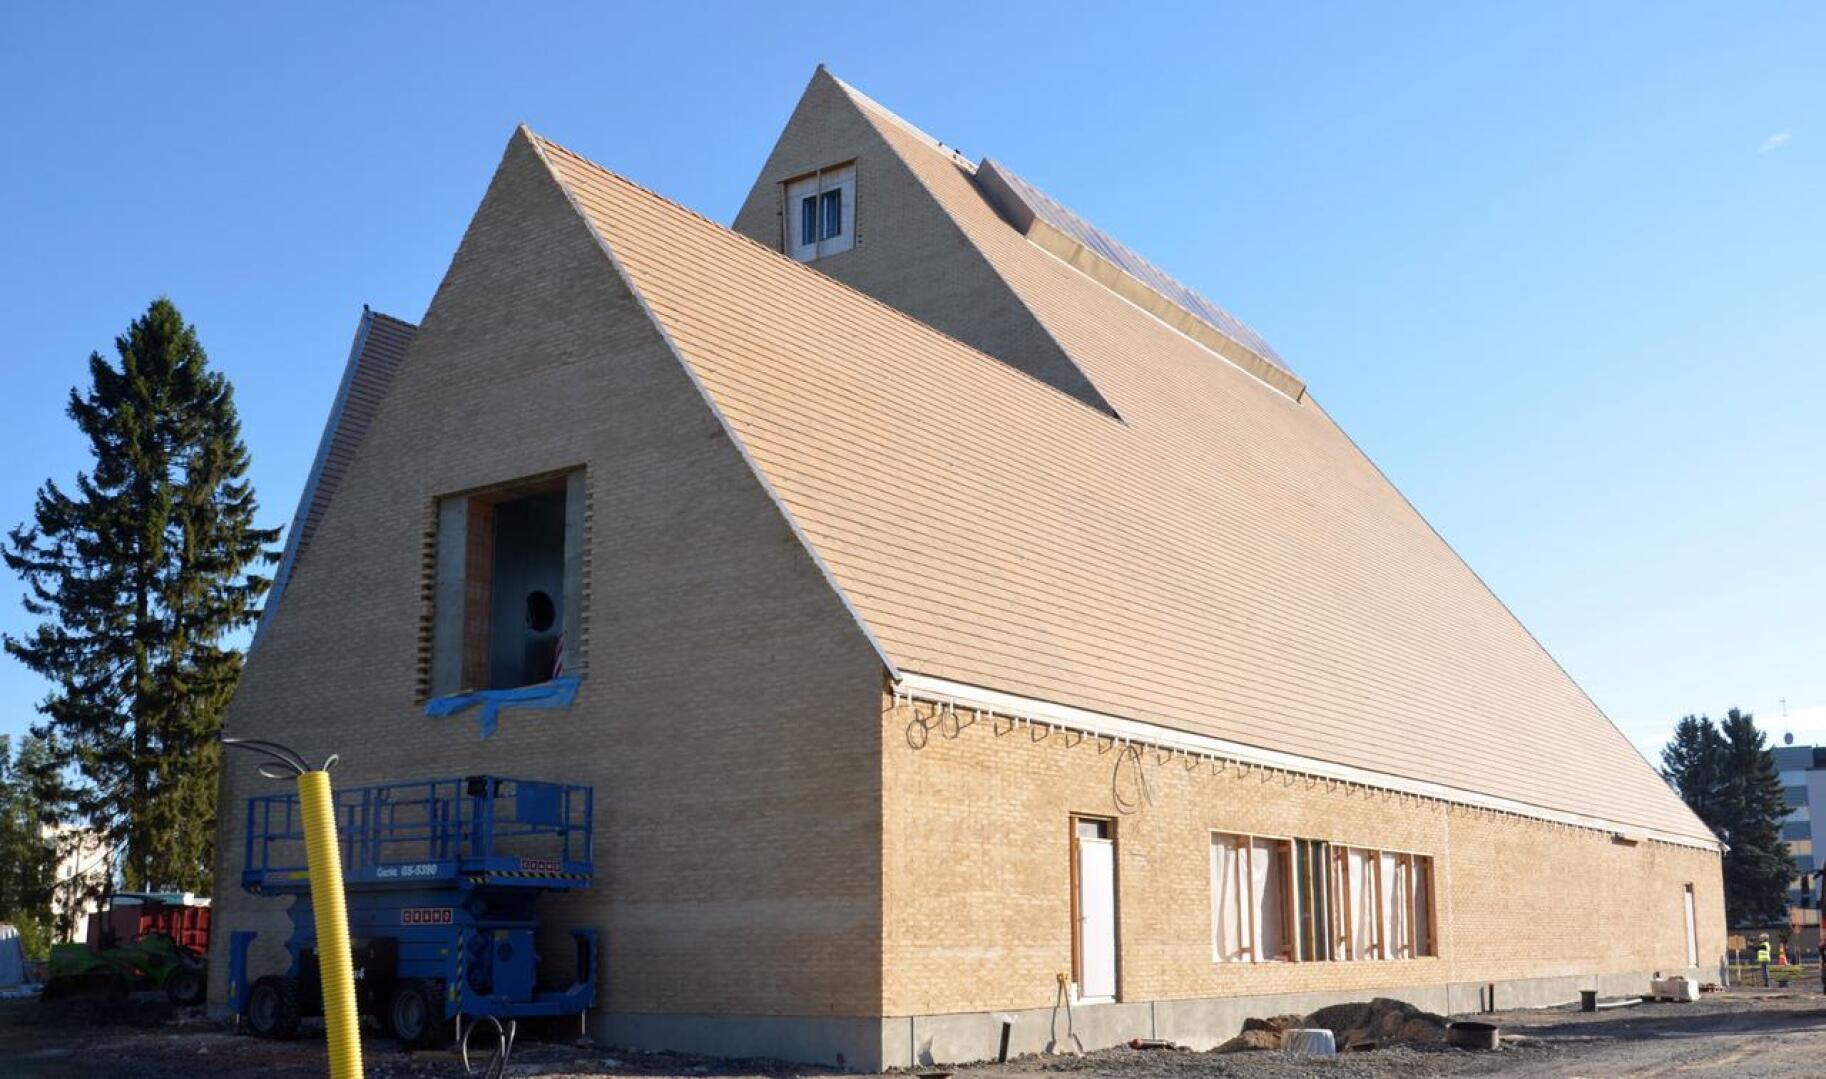 Rave Rakennus kuuluu myös Ylivieskan uutta kirkkoa rakentavaan Kotikirkon Rakentajat -yhtymään.